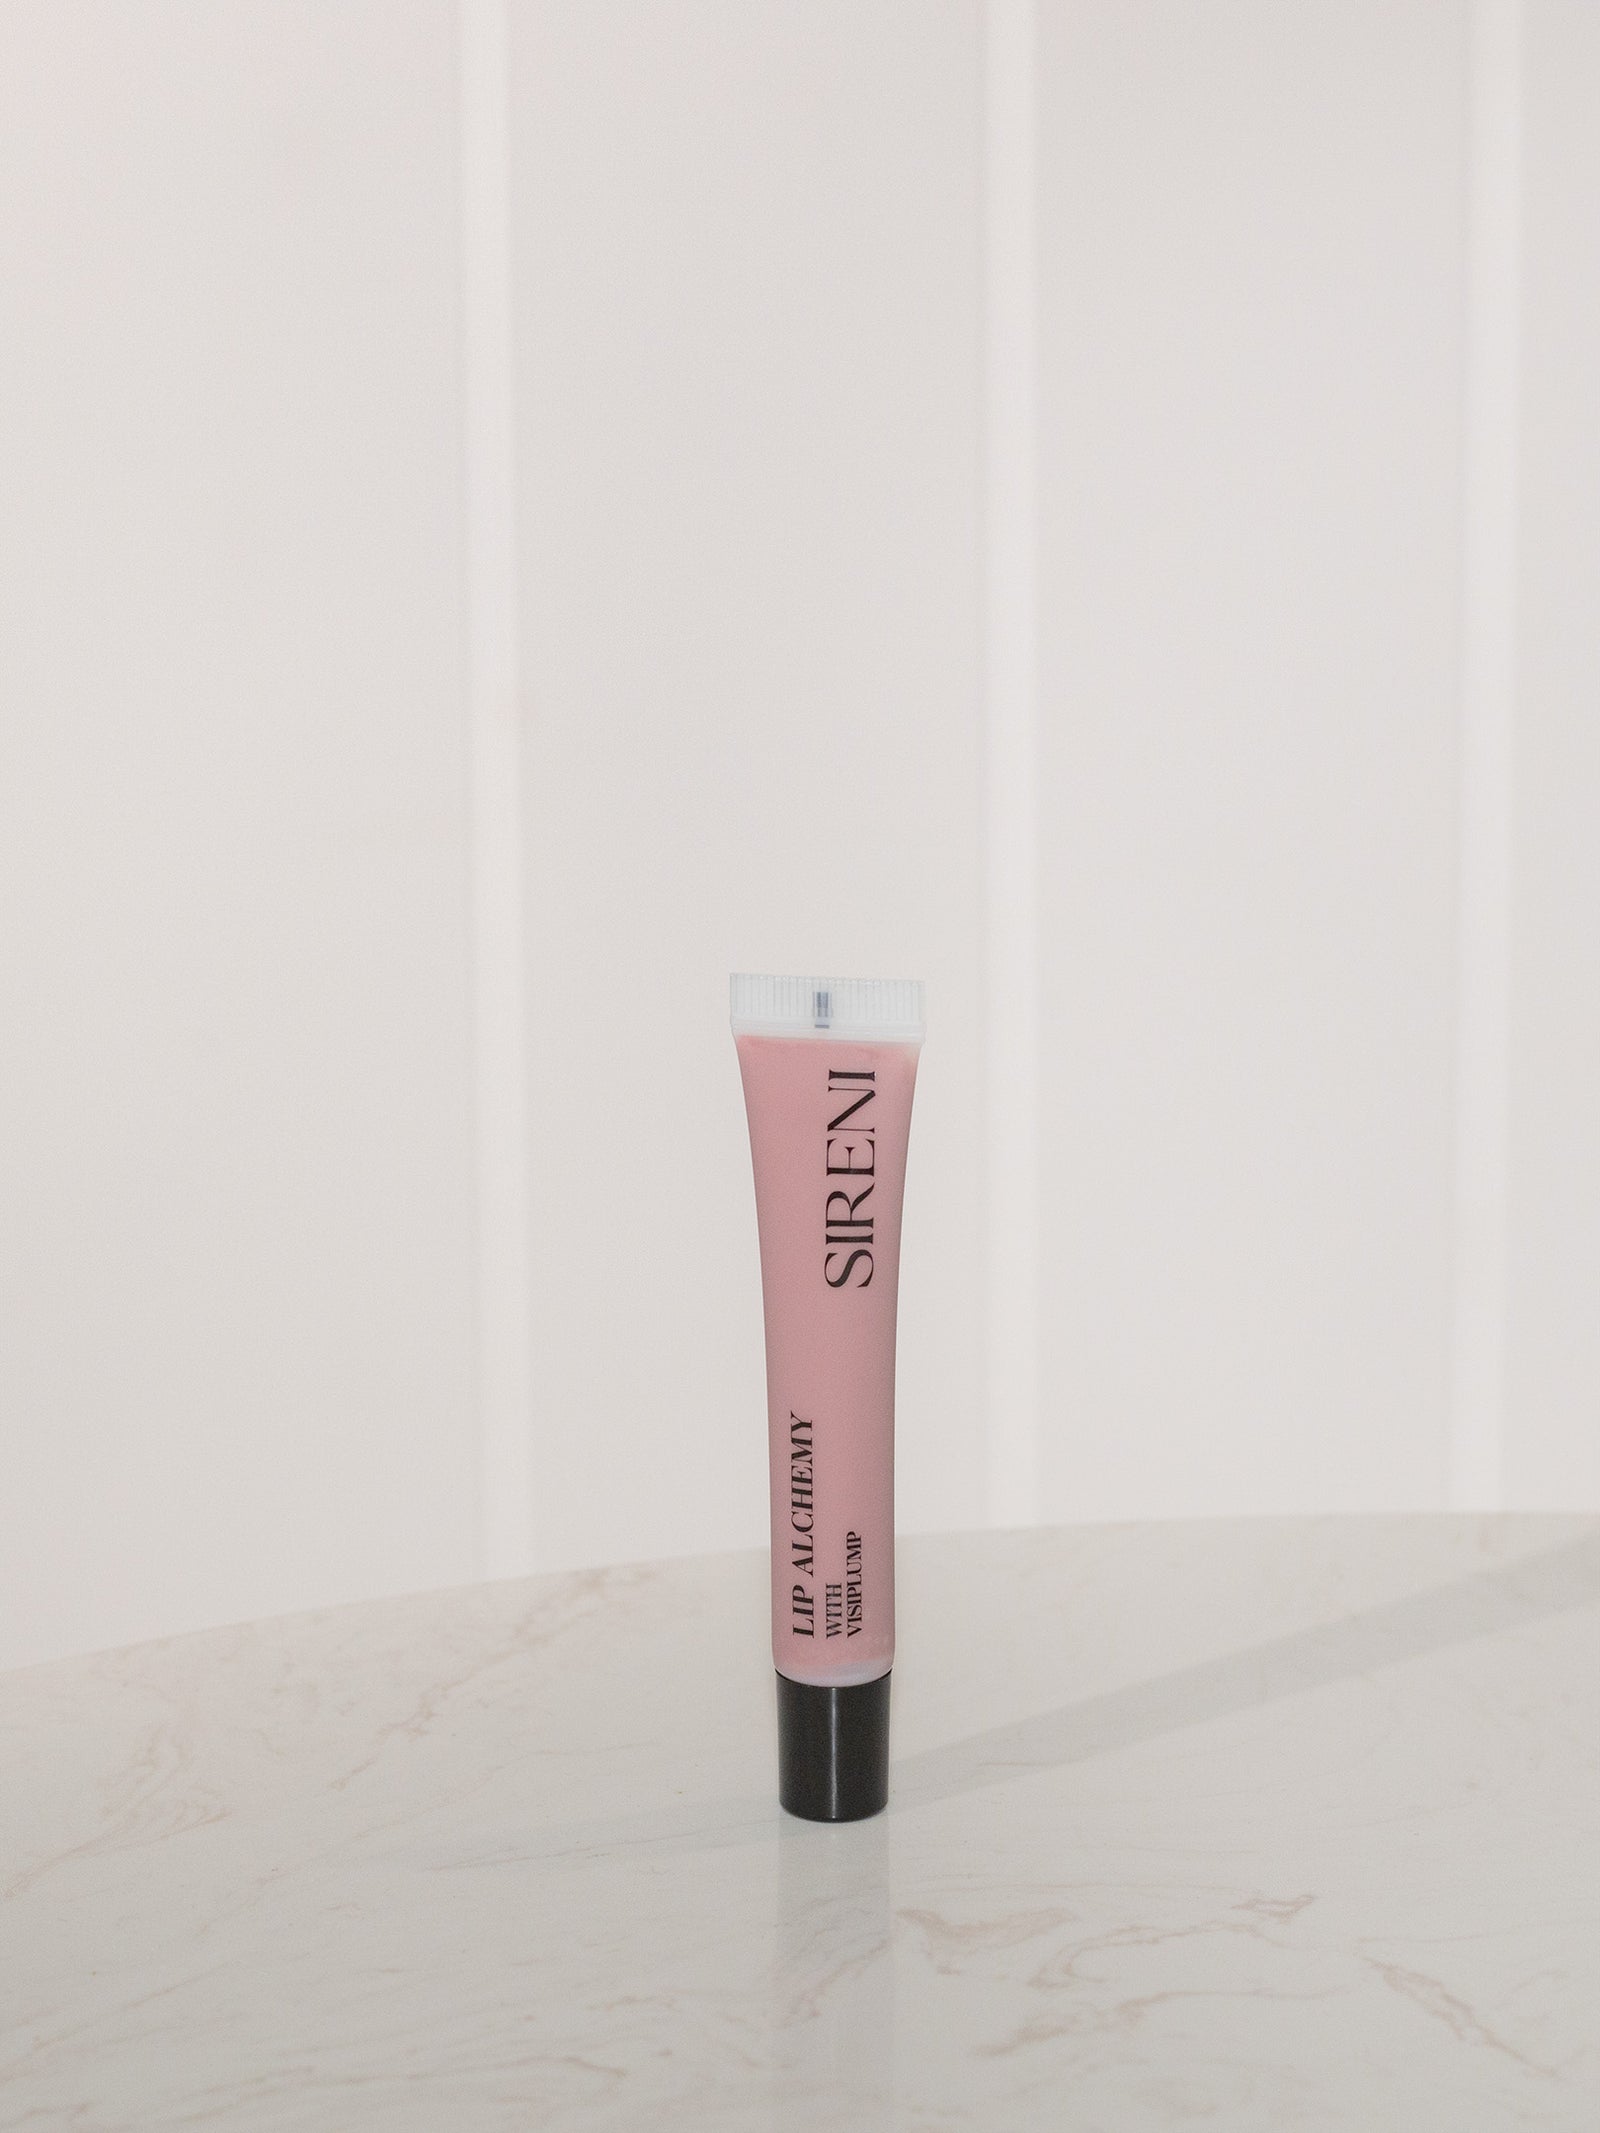 Sleek - Siren lipstick palette - Aron closet